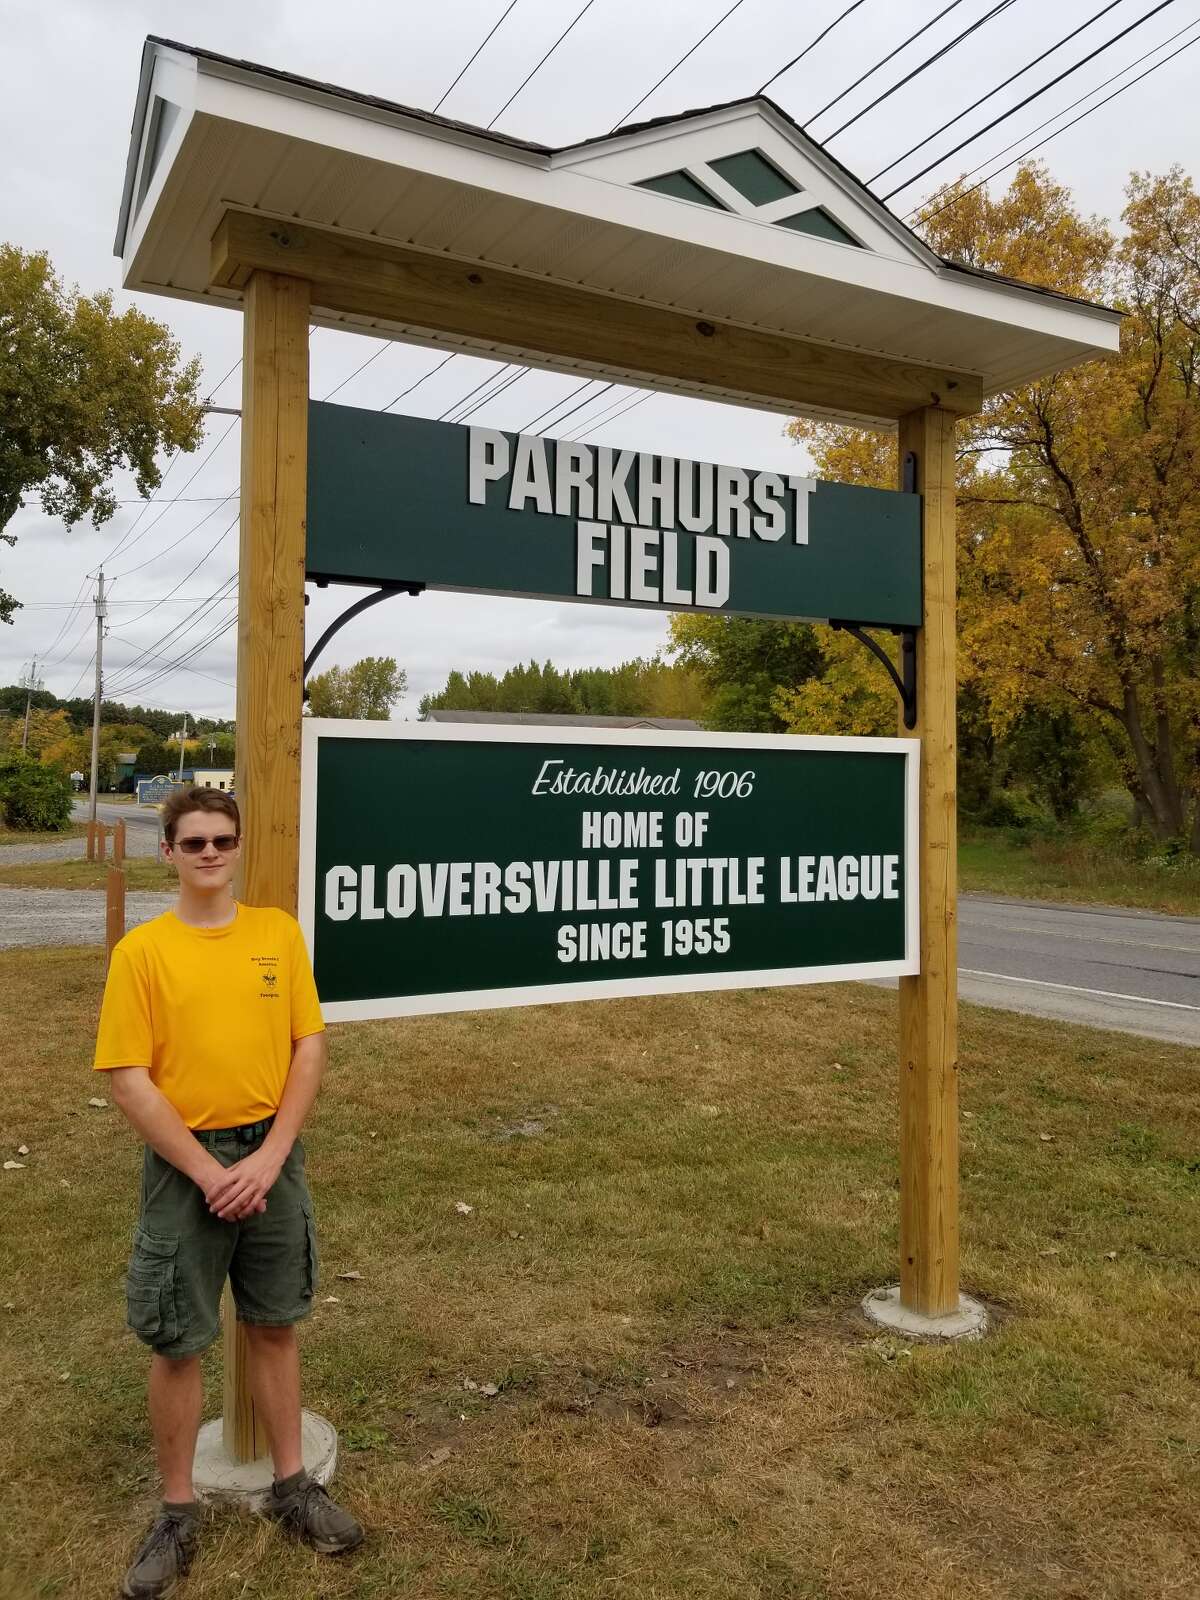 Parkhurst Field in Gloversville, which is home to Gloversville Little League.